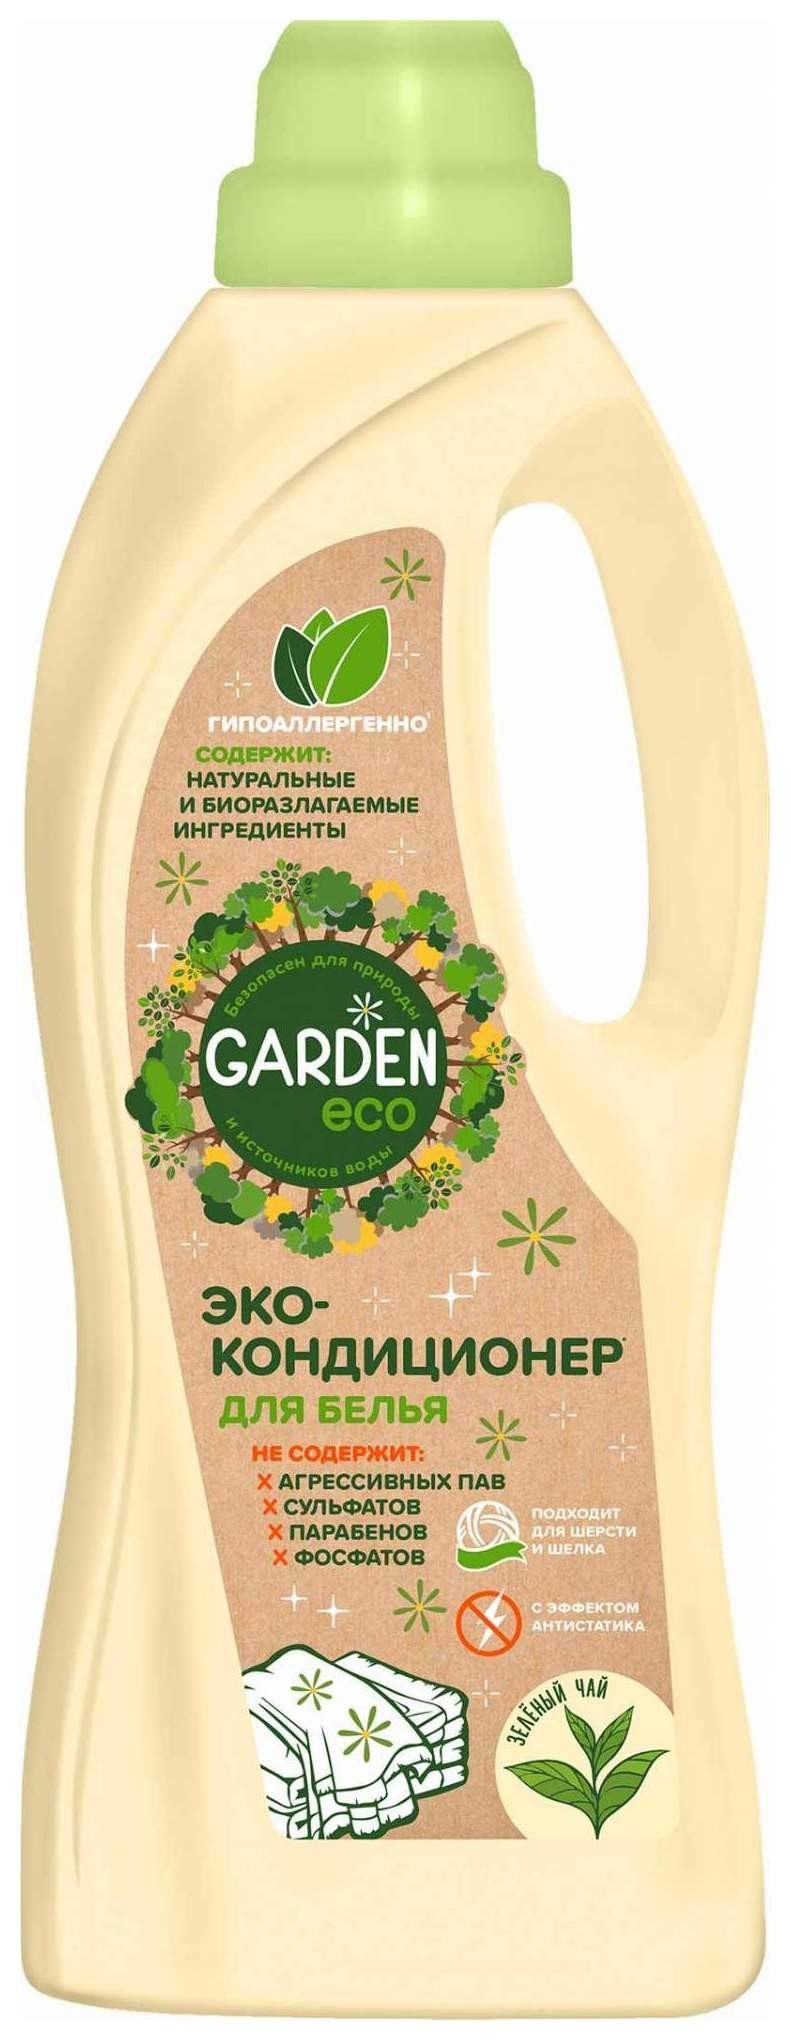 Кондиционер для белья экологичный Зеленый чай Garden Eco